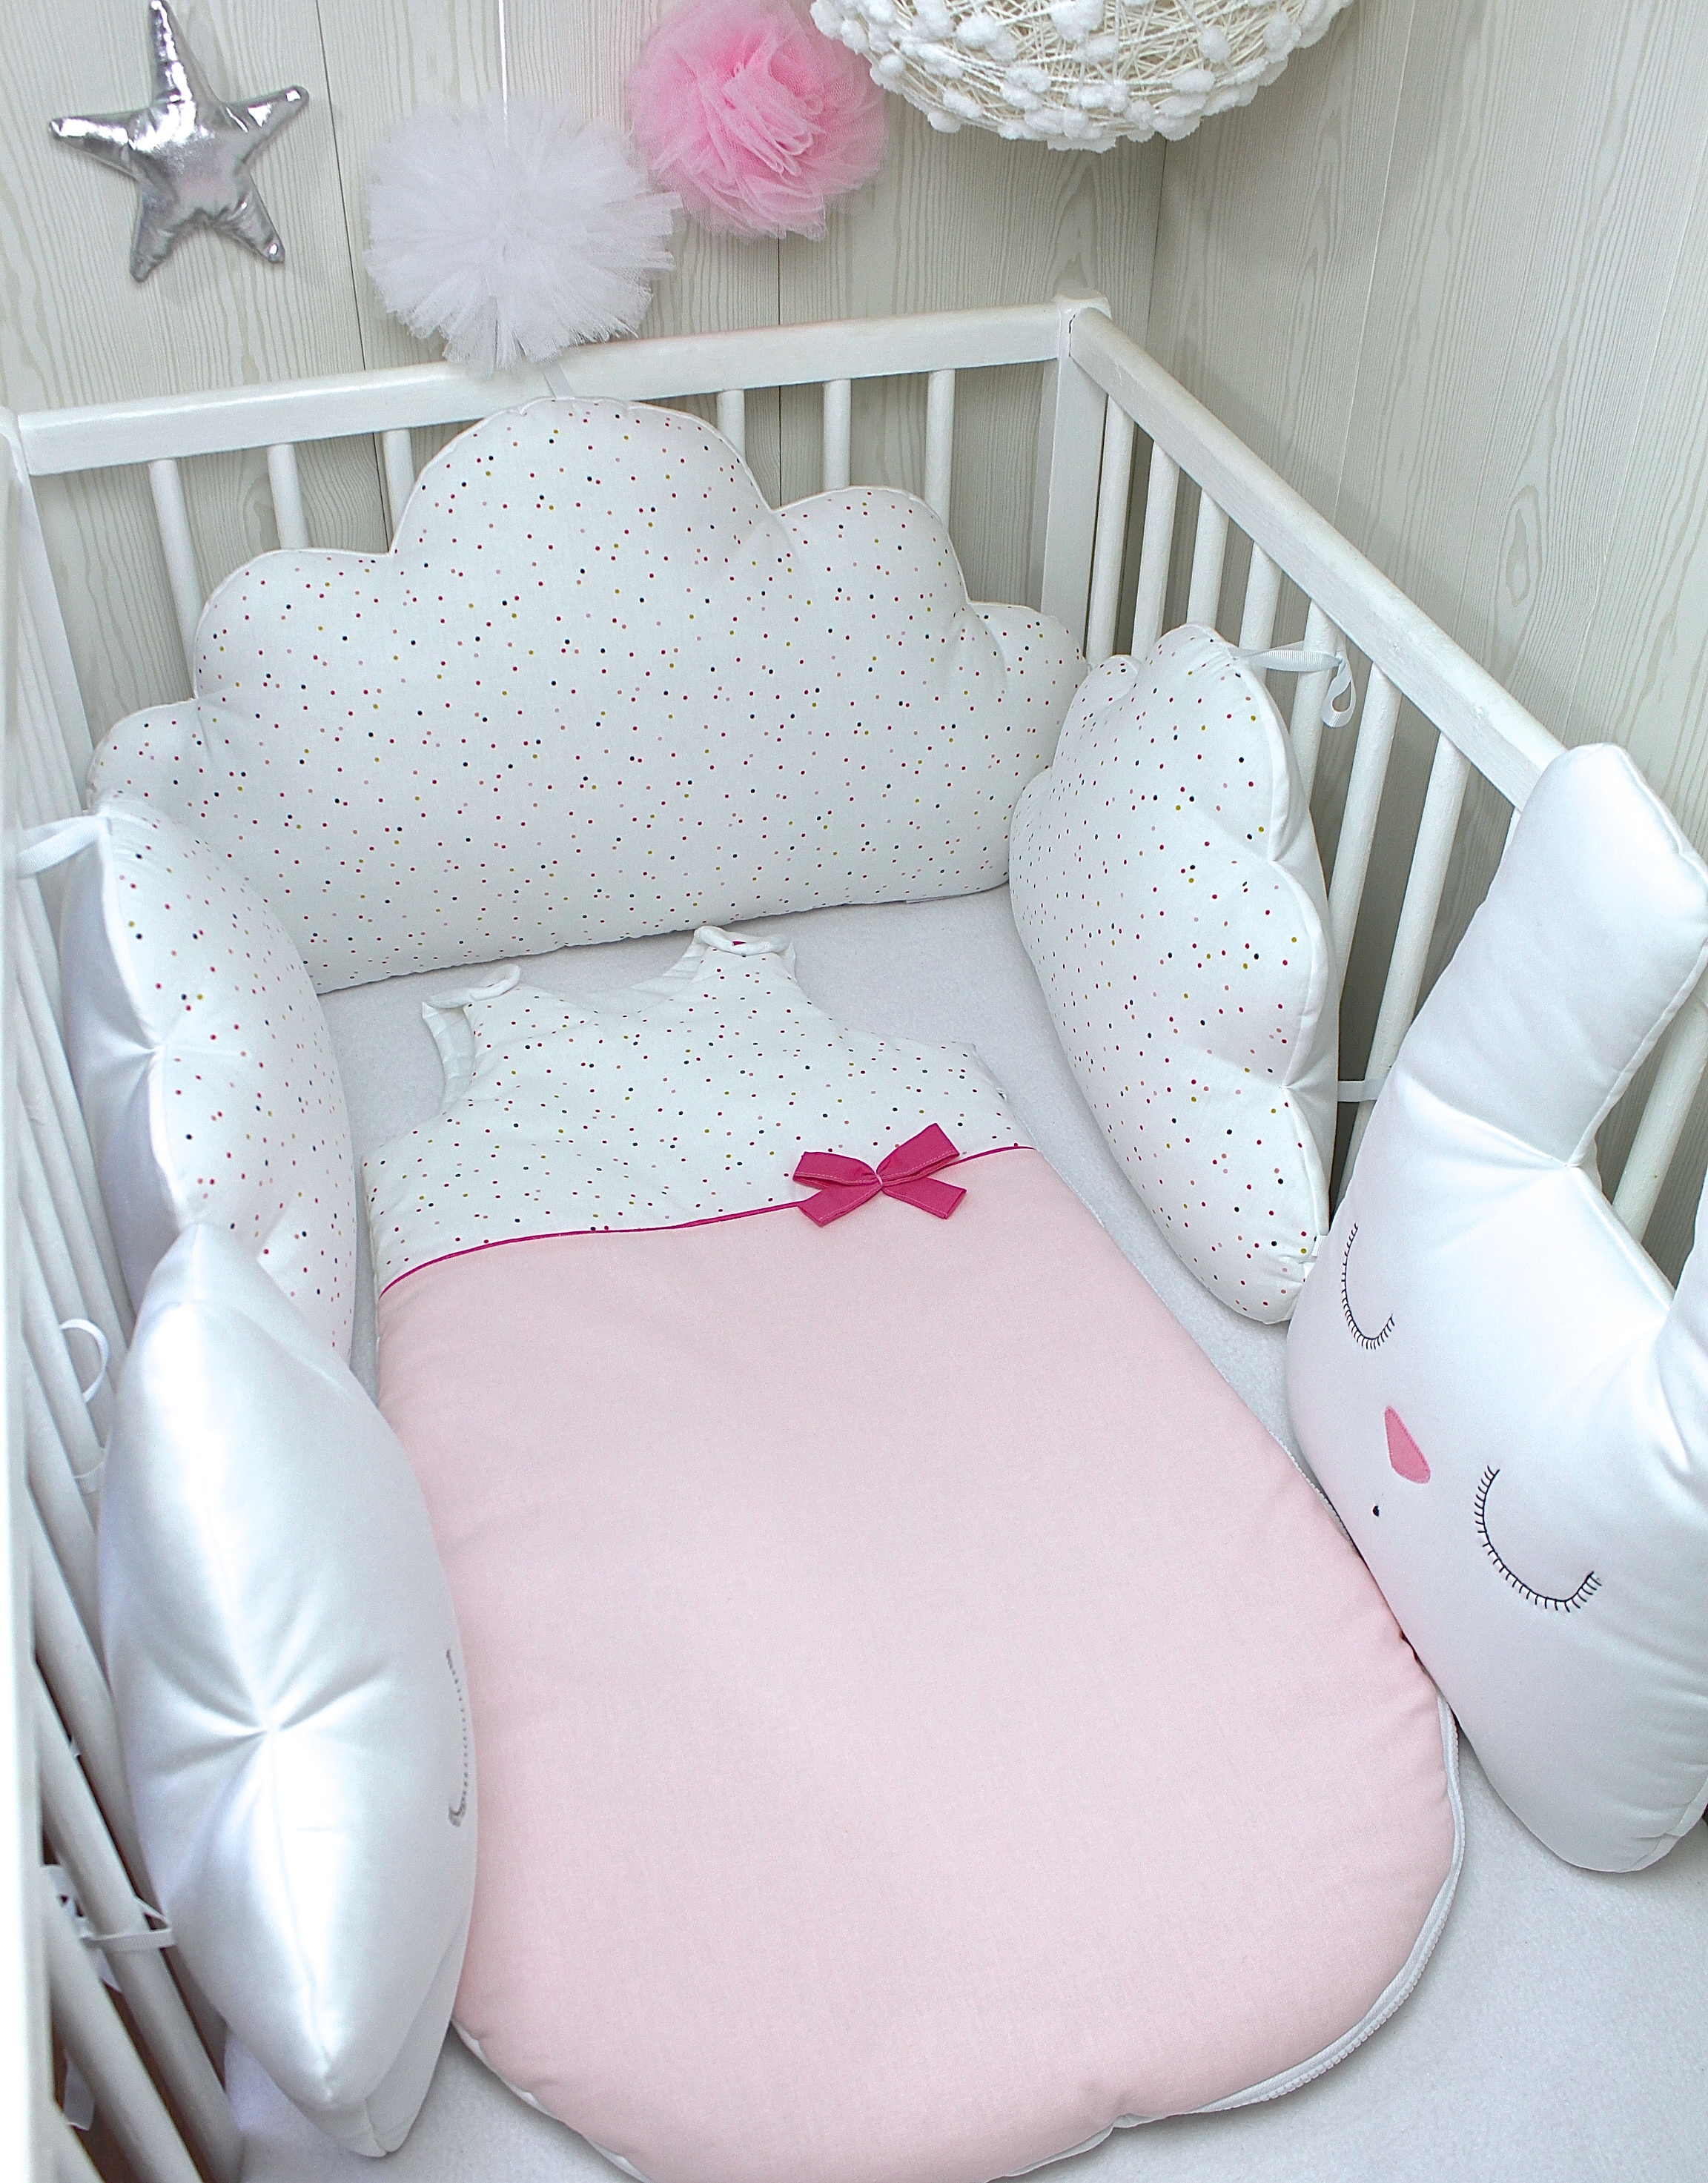 Tour de lit bébé en 60cm large, 5 coussins: lapin blanc, étoile et nuage